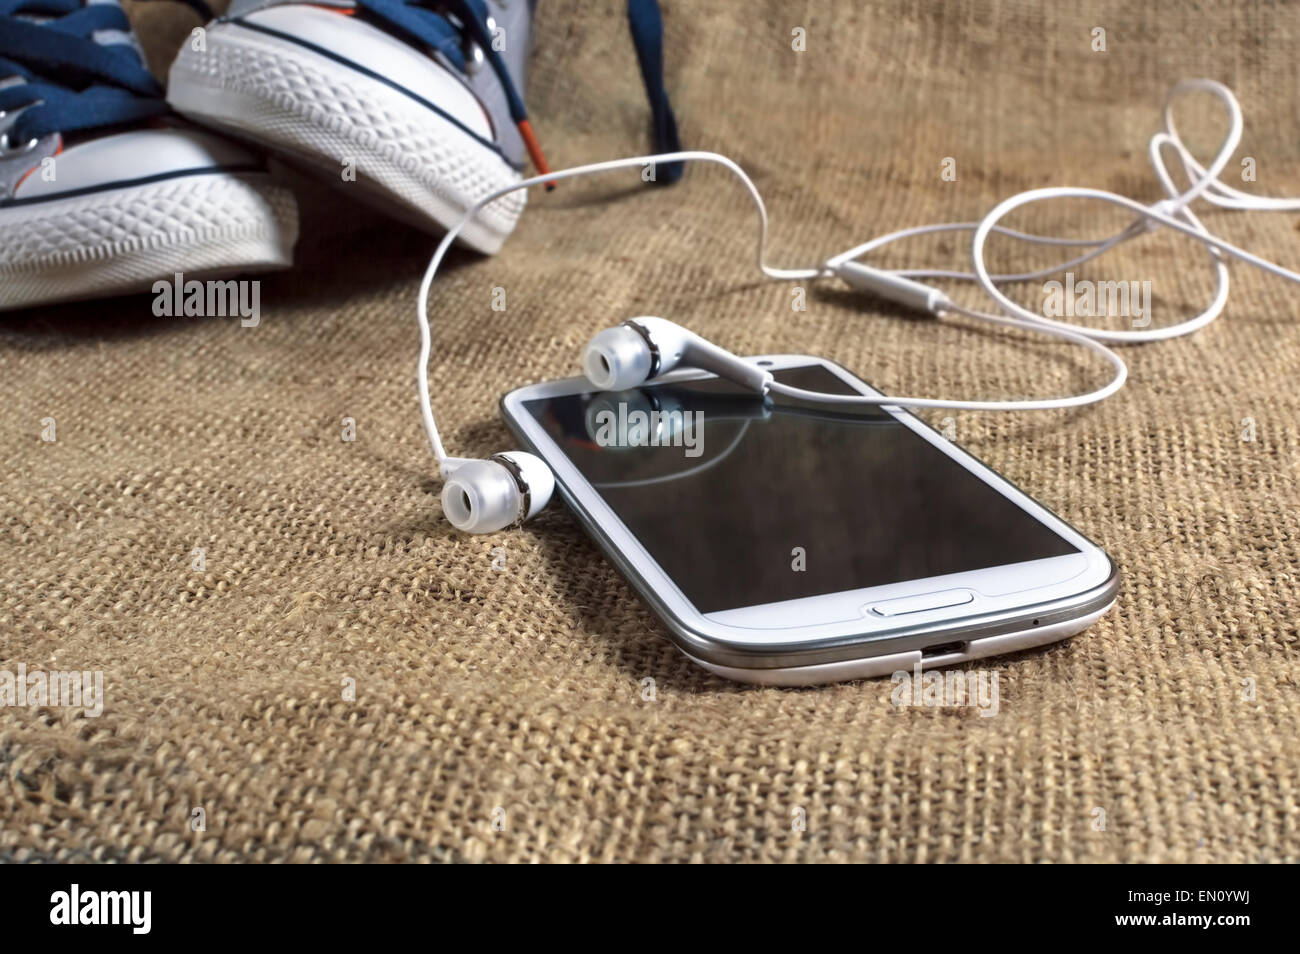 Teléfono inteligente sobre un mantel con sneakers. Profundidad de campo. Foto de stock